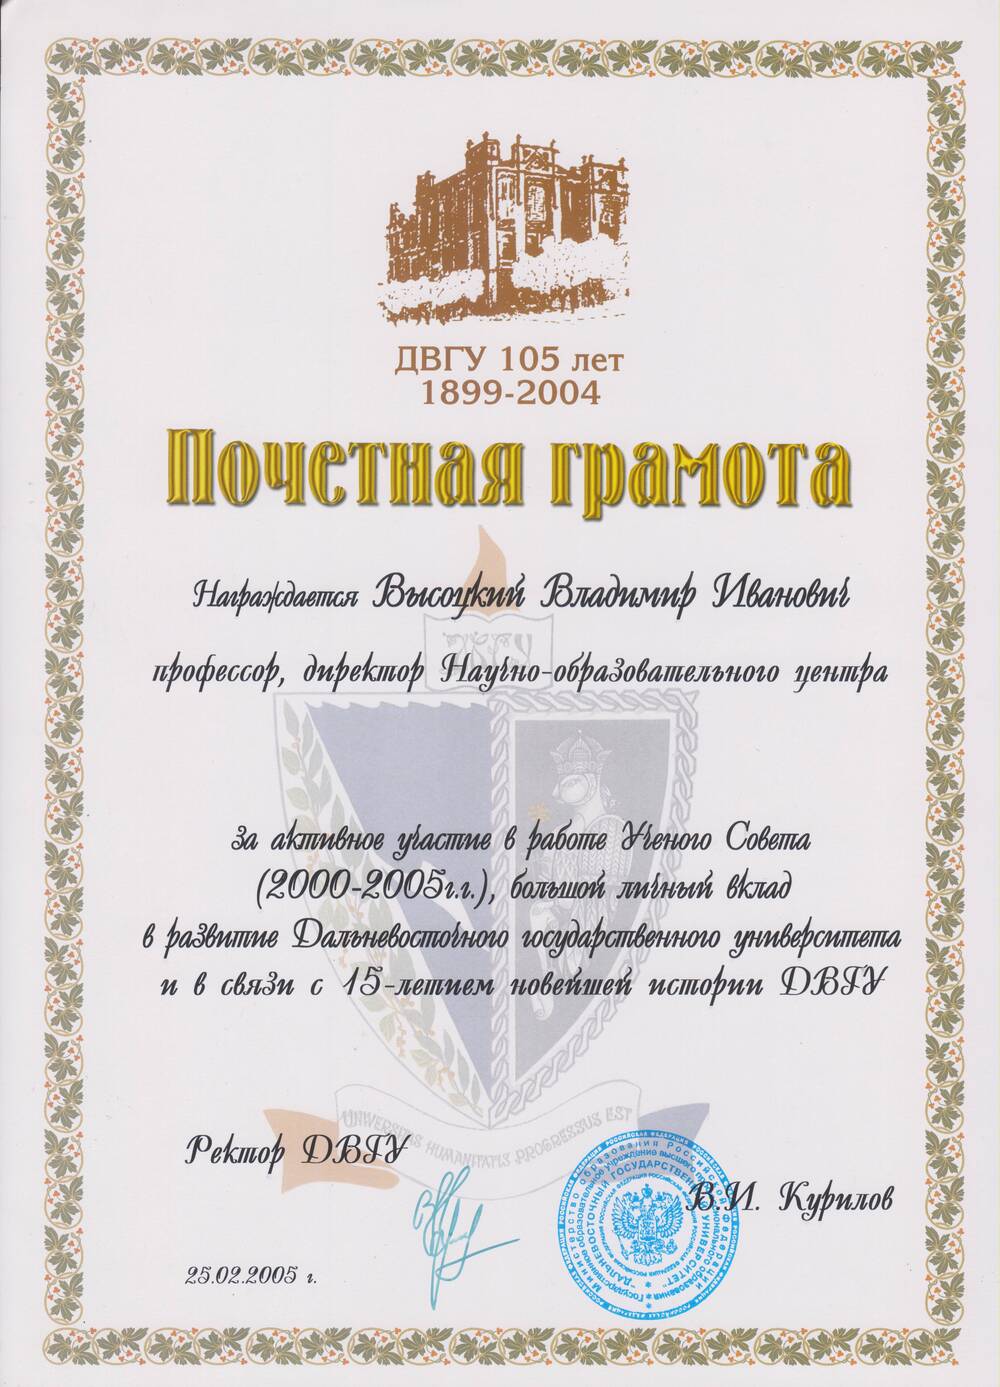 Почетная грамота Высоцкому В.И. за активное участие в работе Ученого совета (2000-2005 г.)